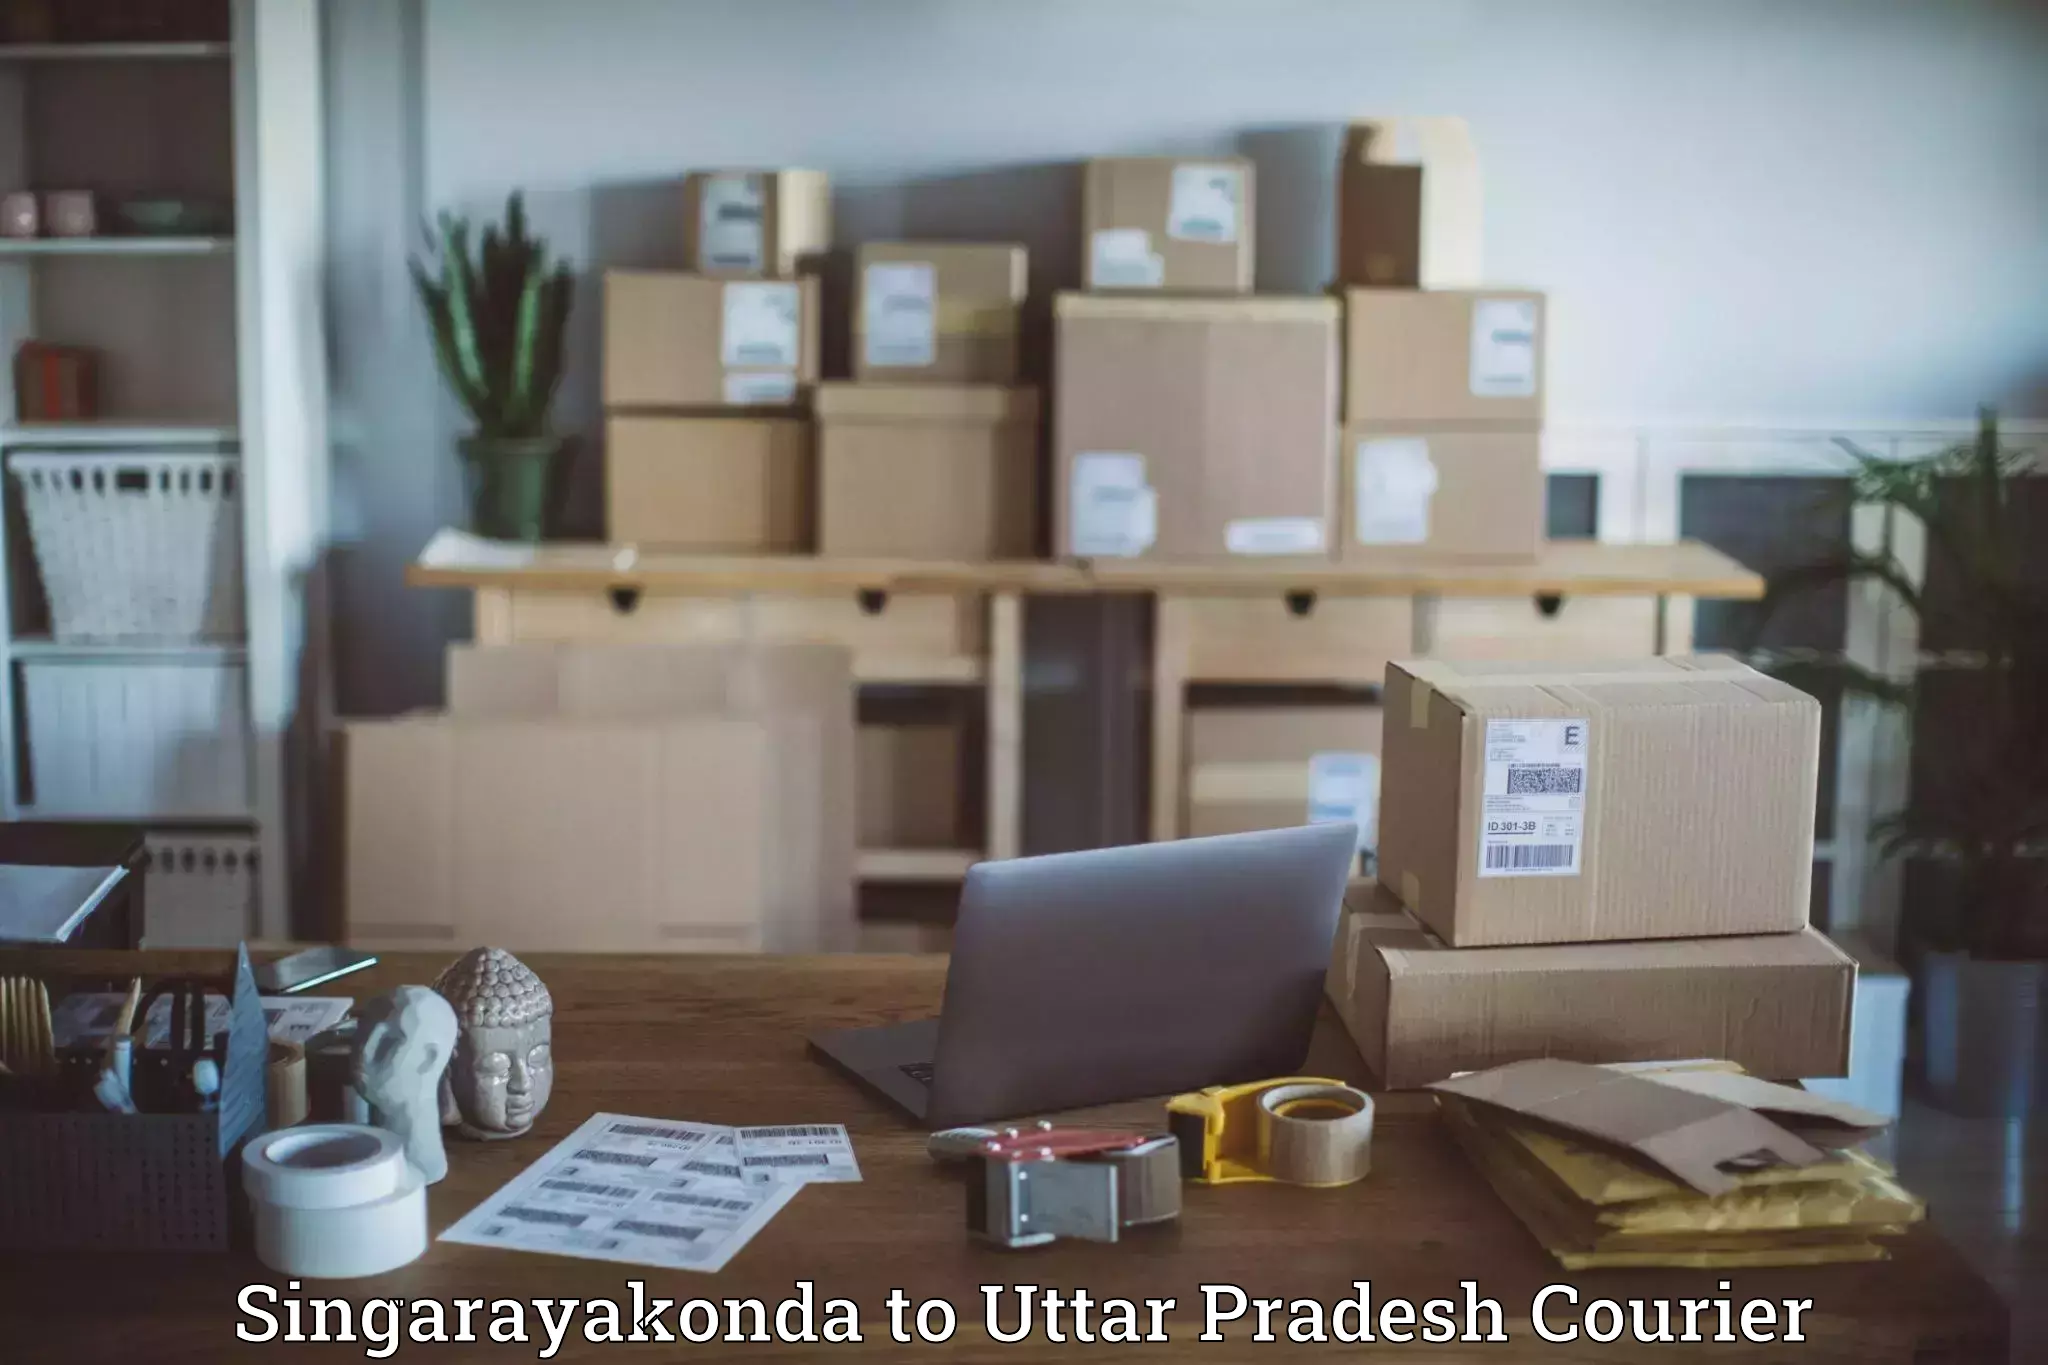 Supply chain efficiency Singarayakonda to Uttar Pradesh